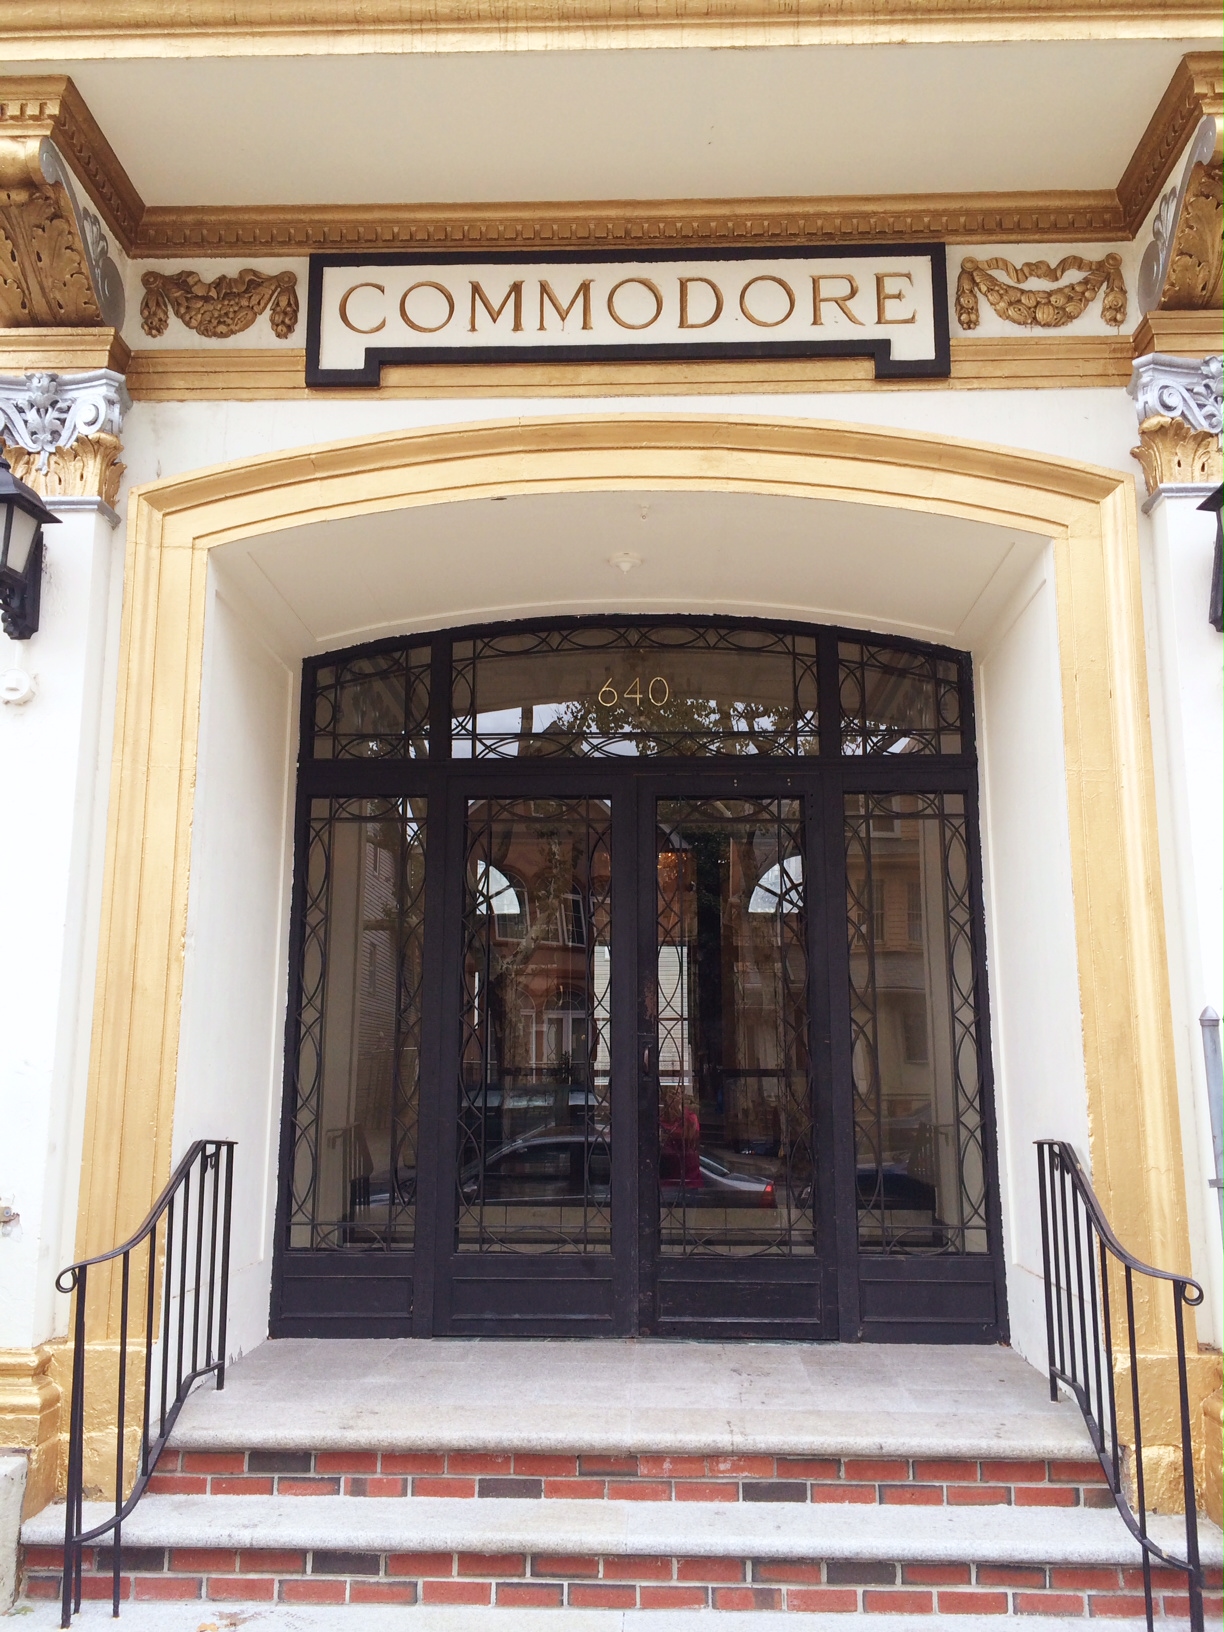 Commodore, The